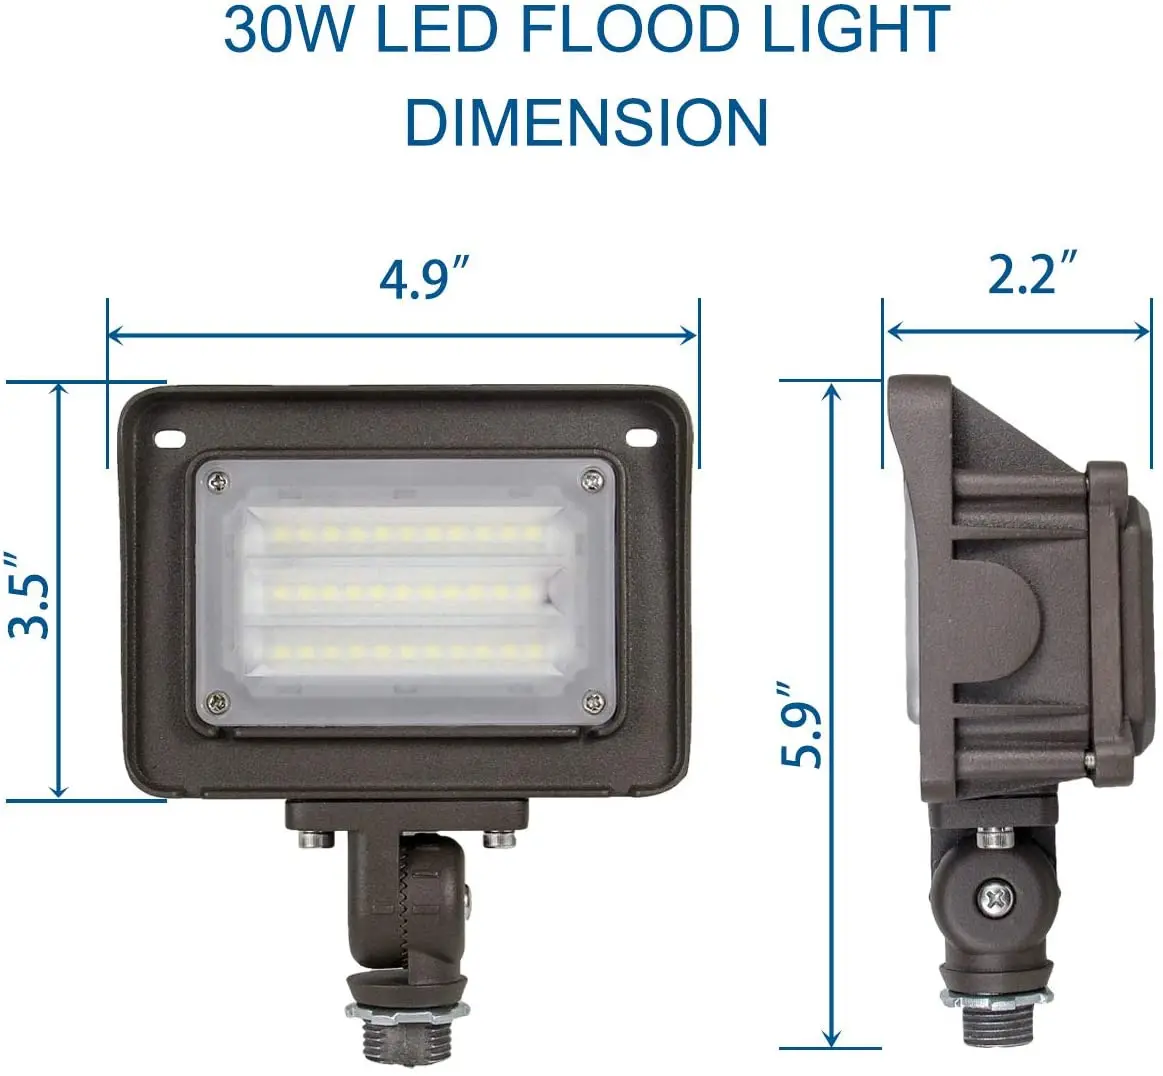 100-277Vac ETL DLC certification IP65 waterproof outdoor security lighting